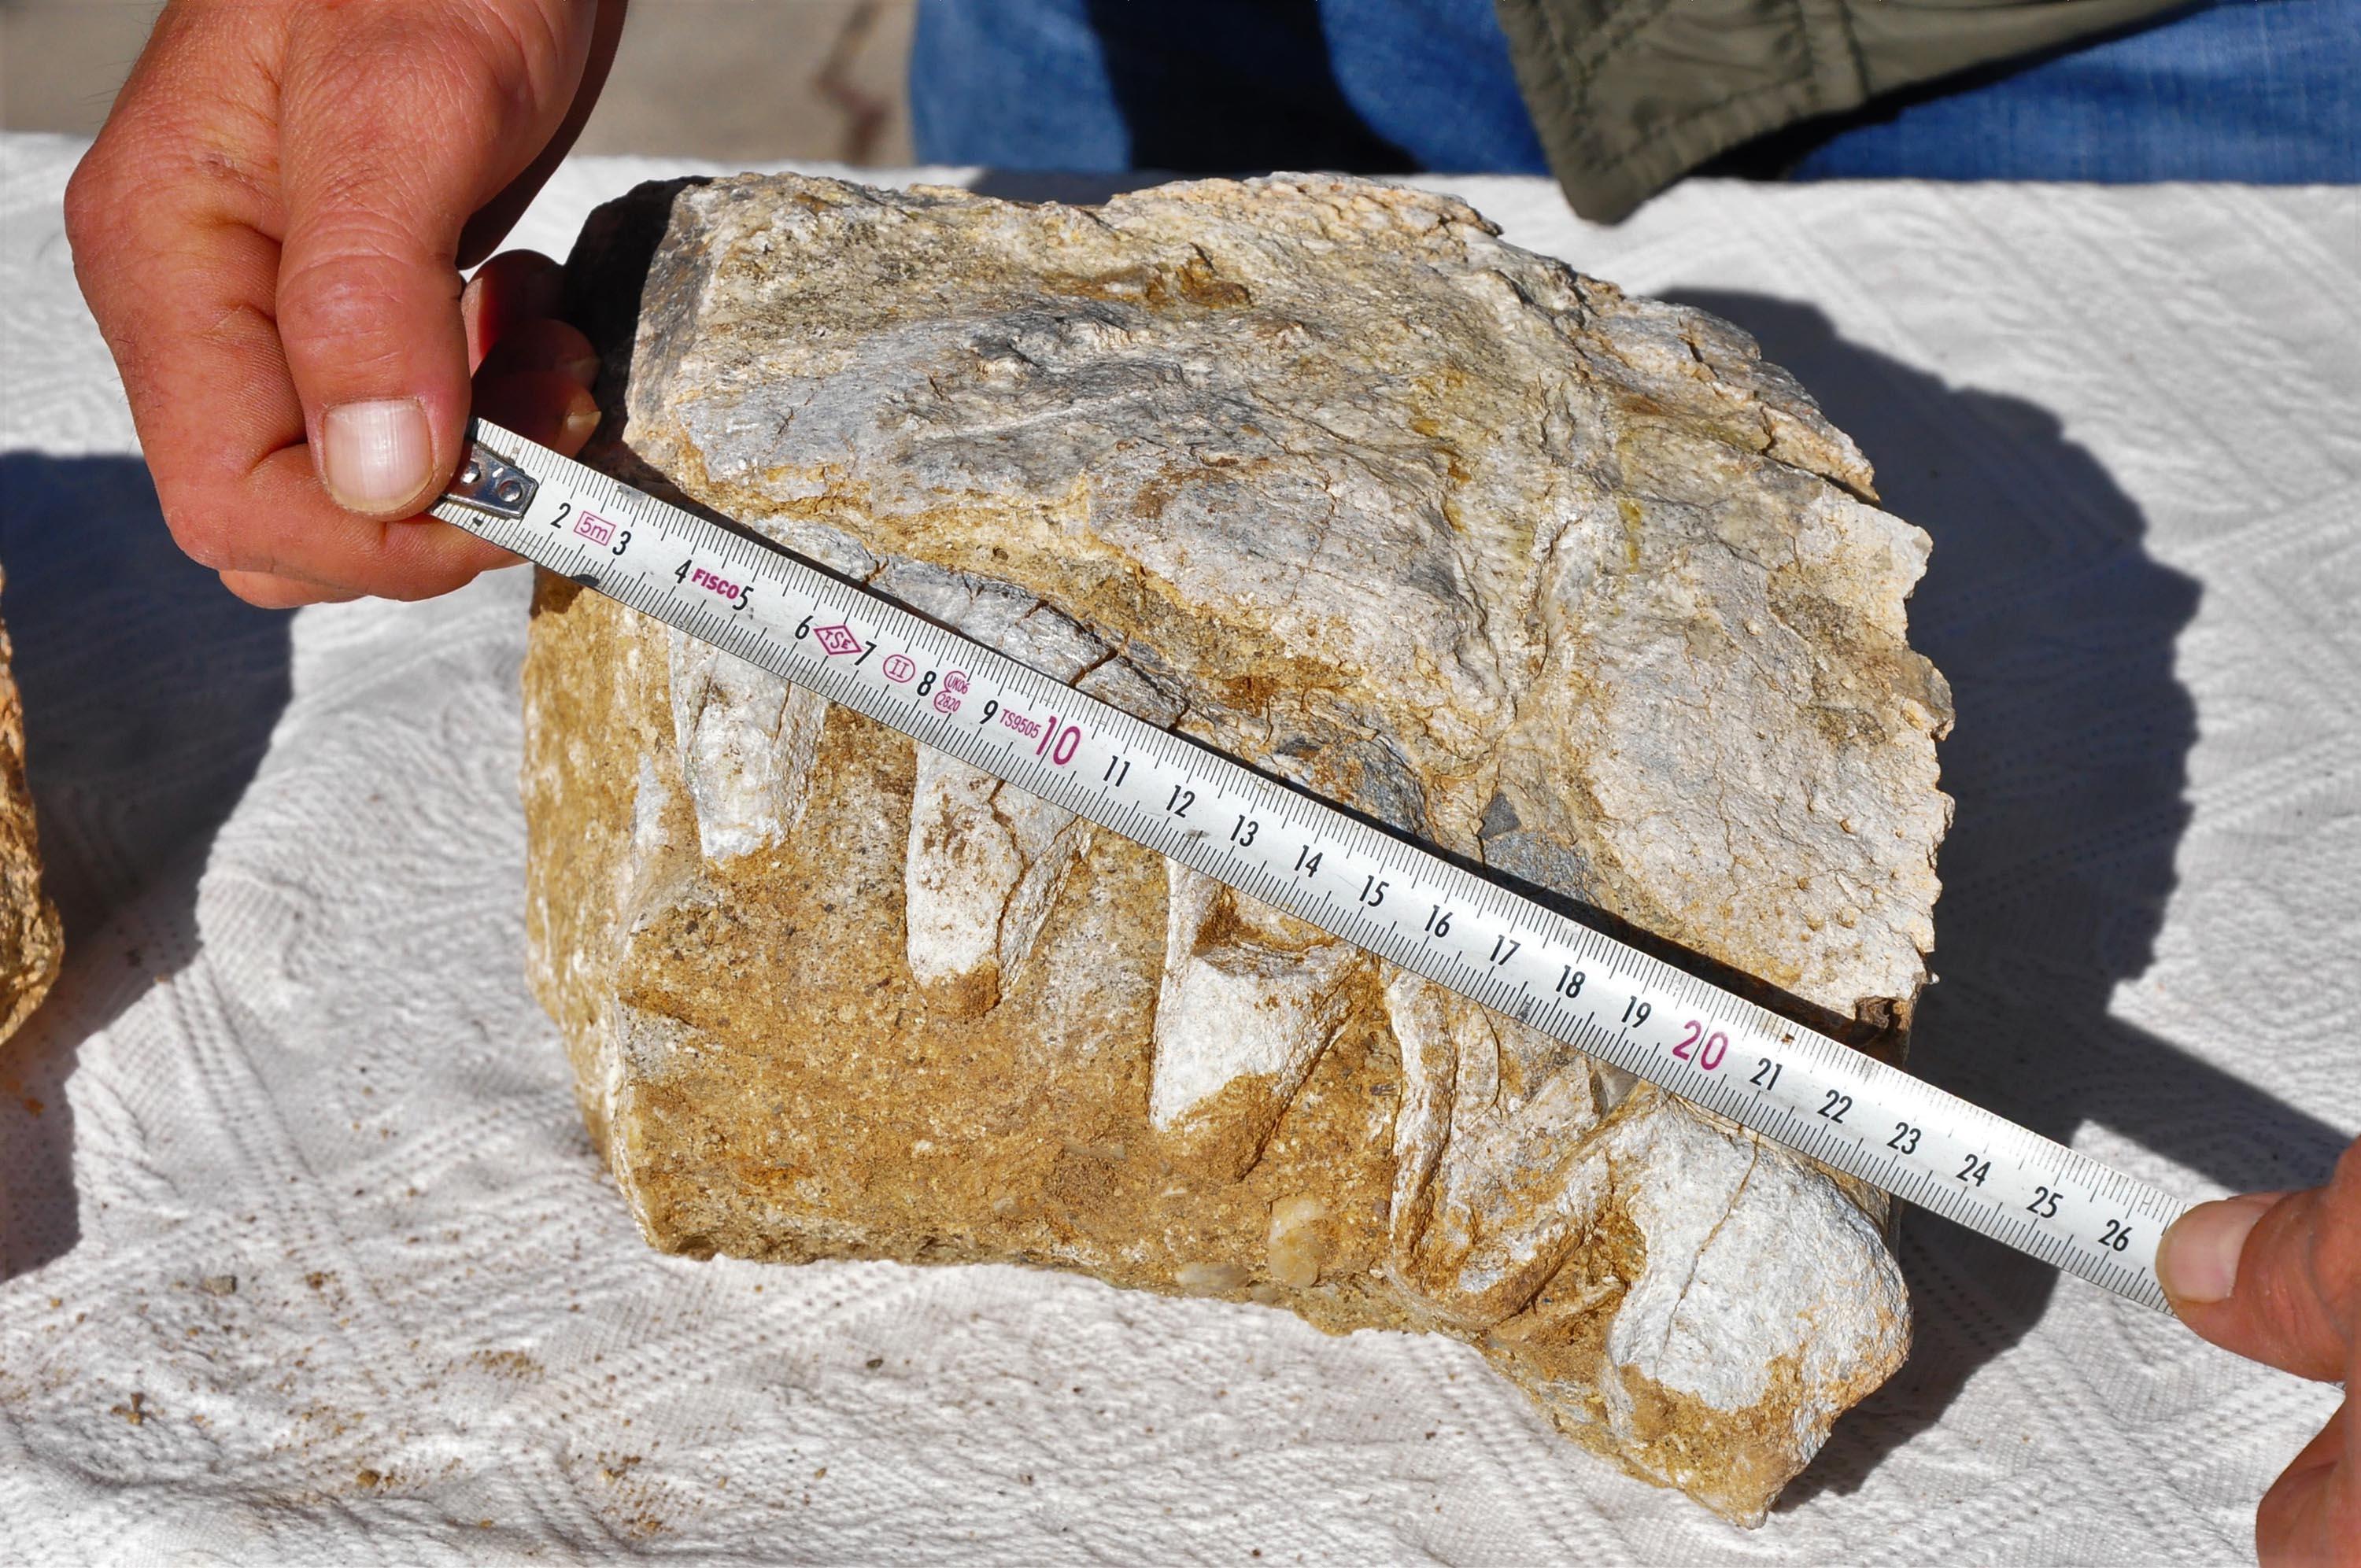 10 yaşındaki Elçinin bulduğu kaya parçası için milyonlarca yıllık fosil incelemesi